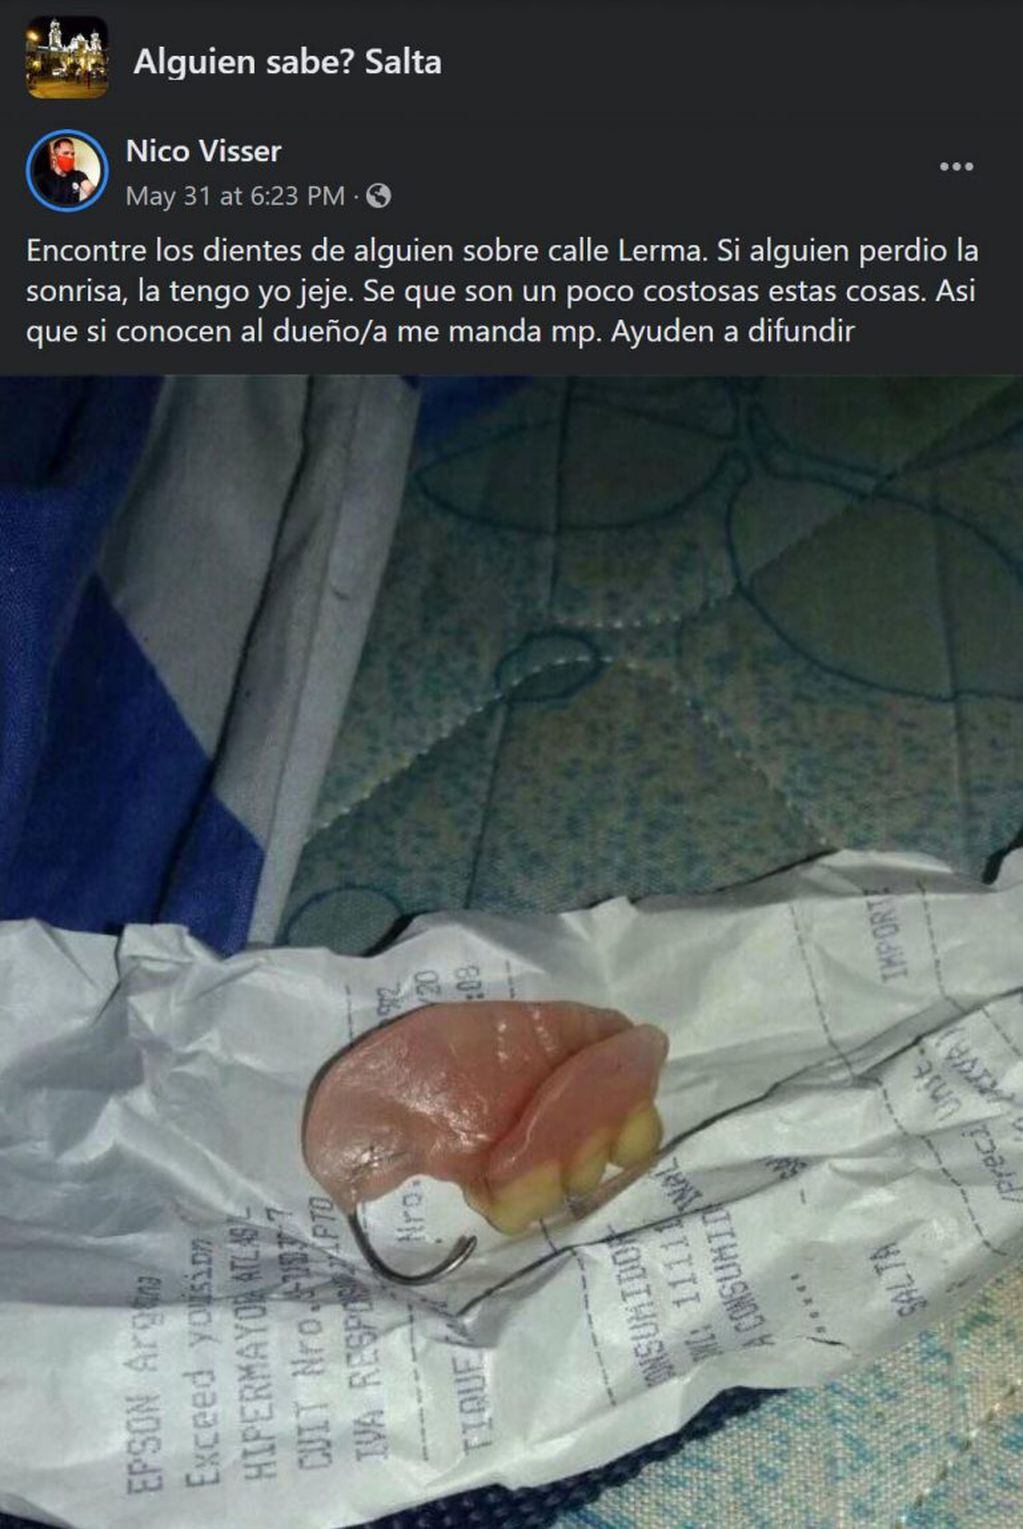 Salteños encontraron dentaduras en el centro salteño (Facebook Alguien sabe? Salta)